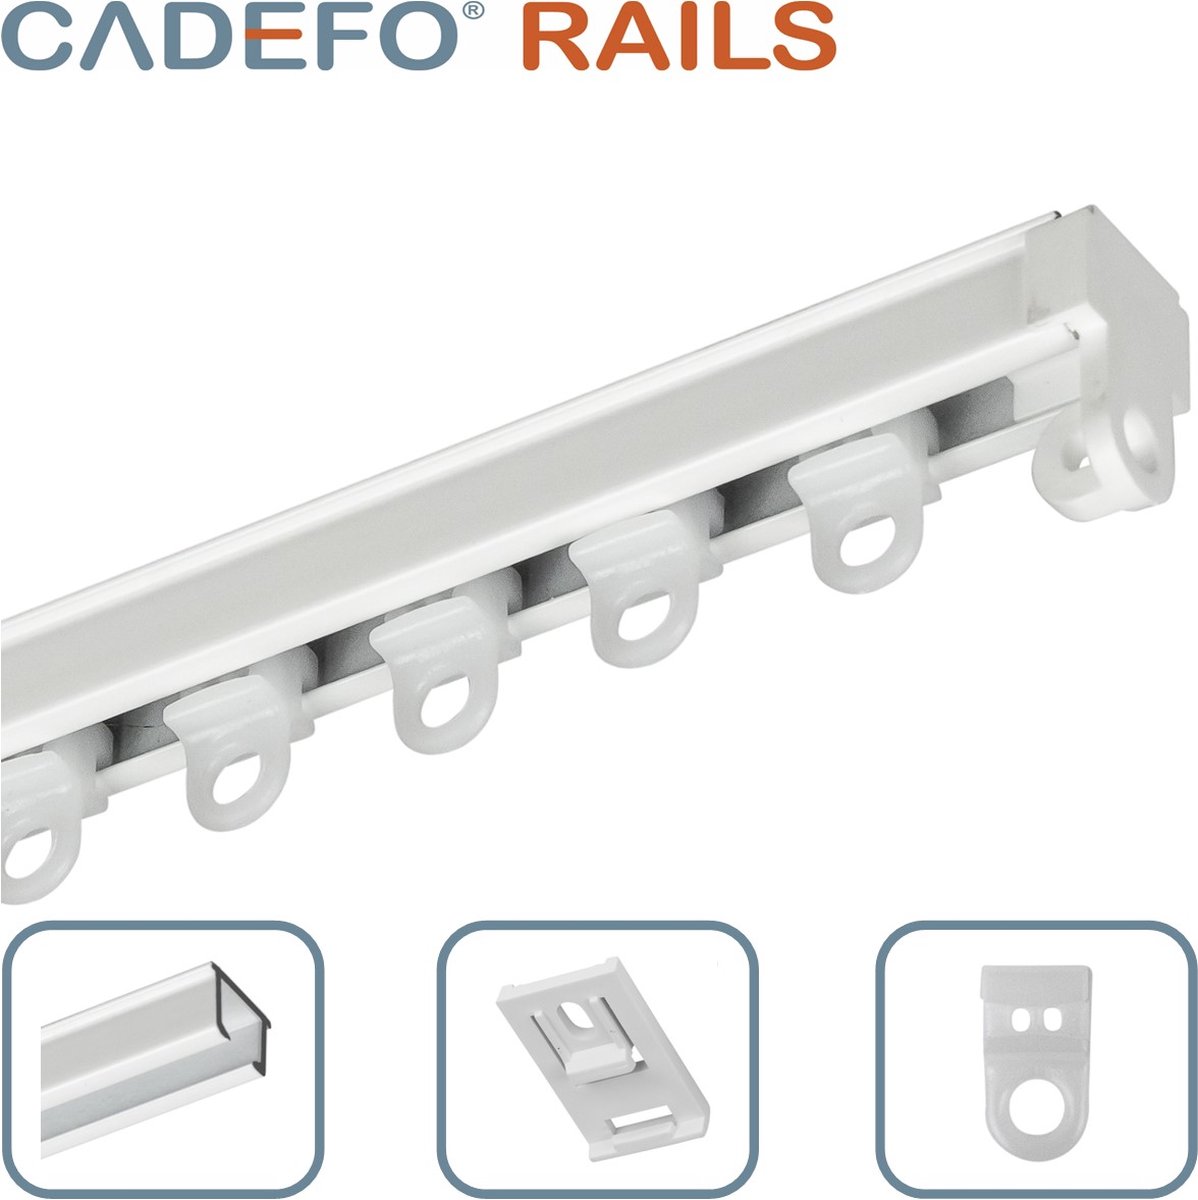 CADEFO RAILS (151 - 200 cm) Gordijnrails - Compleet op maat! - UIT 1 STUK - Leverbaar tot 6 meter - Plafondbevestiging - Lengte 155 cm